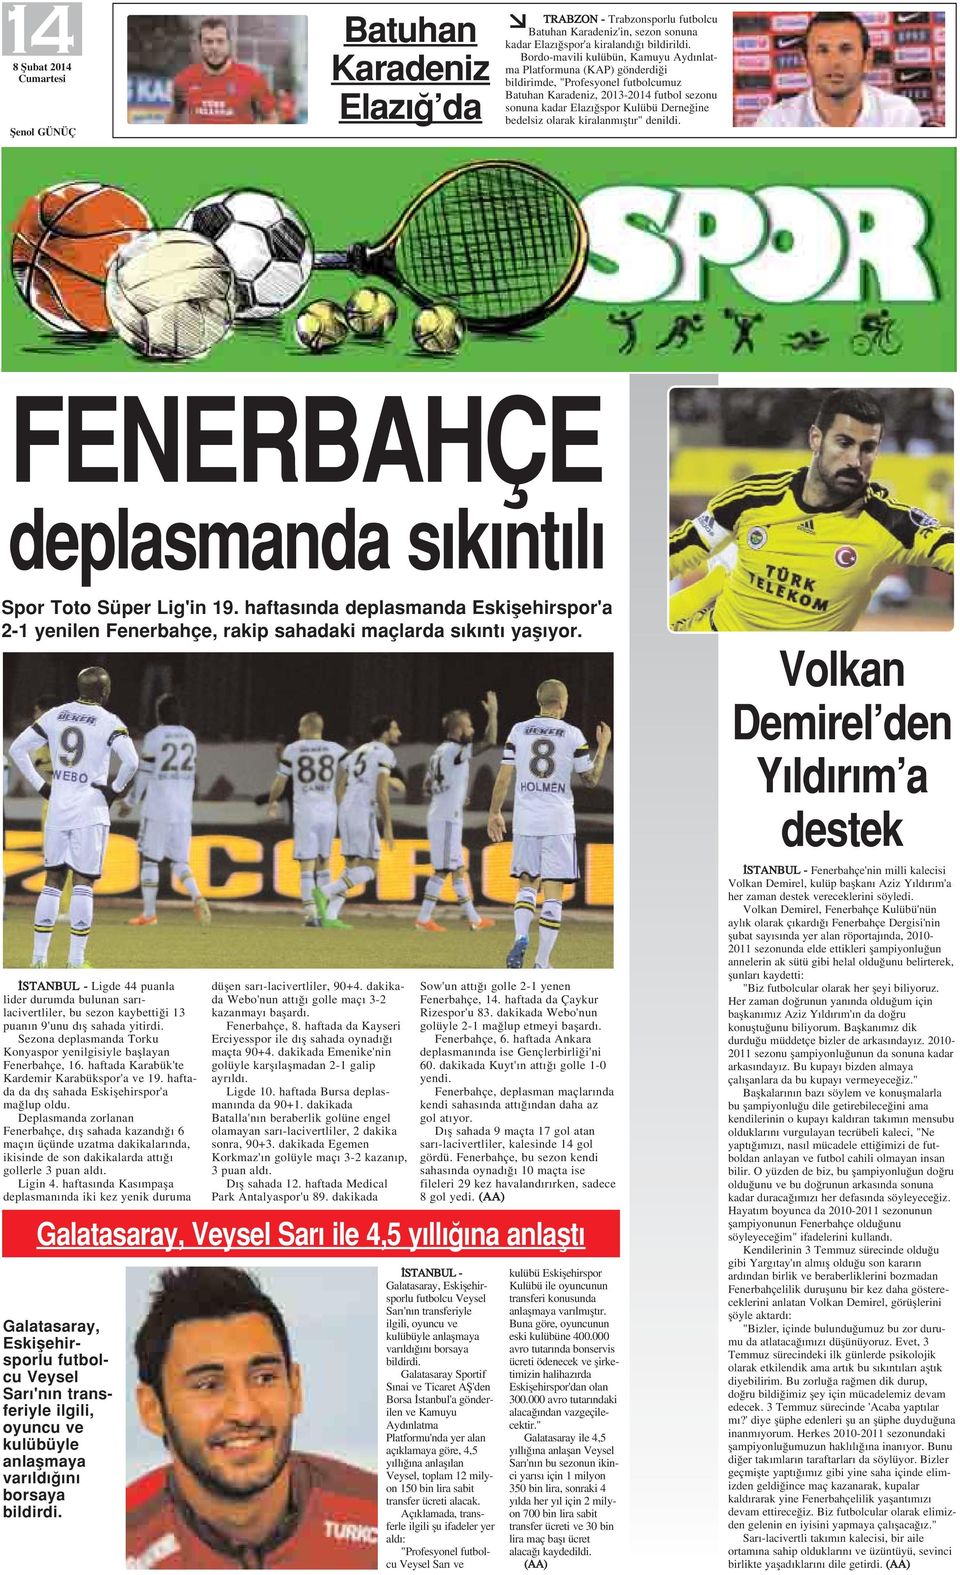 olarak kiralanm flt r" denildi. FENERBAHÇE deplasmanda s k nt l Spor Toto Süper Lig'in 19. haftas nda deplasmanda Eskiflehirspor'a 2-1 yenilen Fenerbahçe, rakip sahadaki maçlarda s k nt yafl yor.